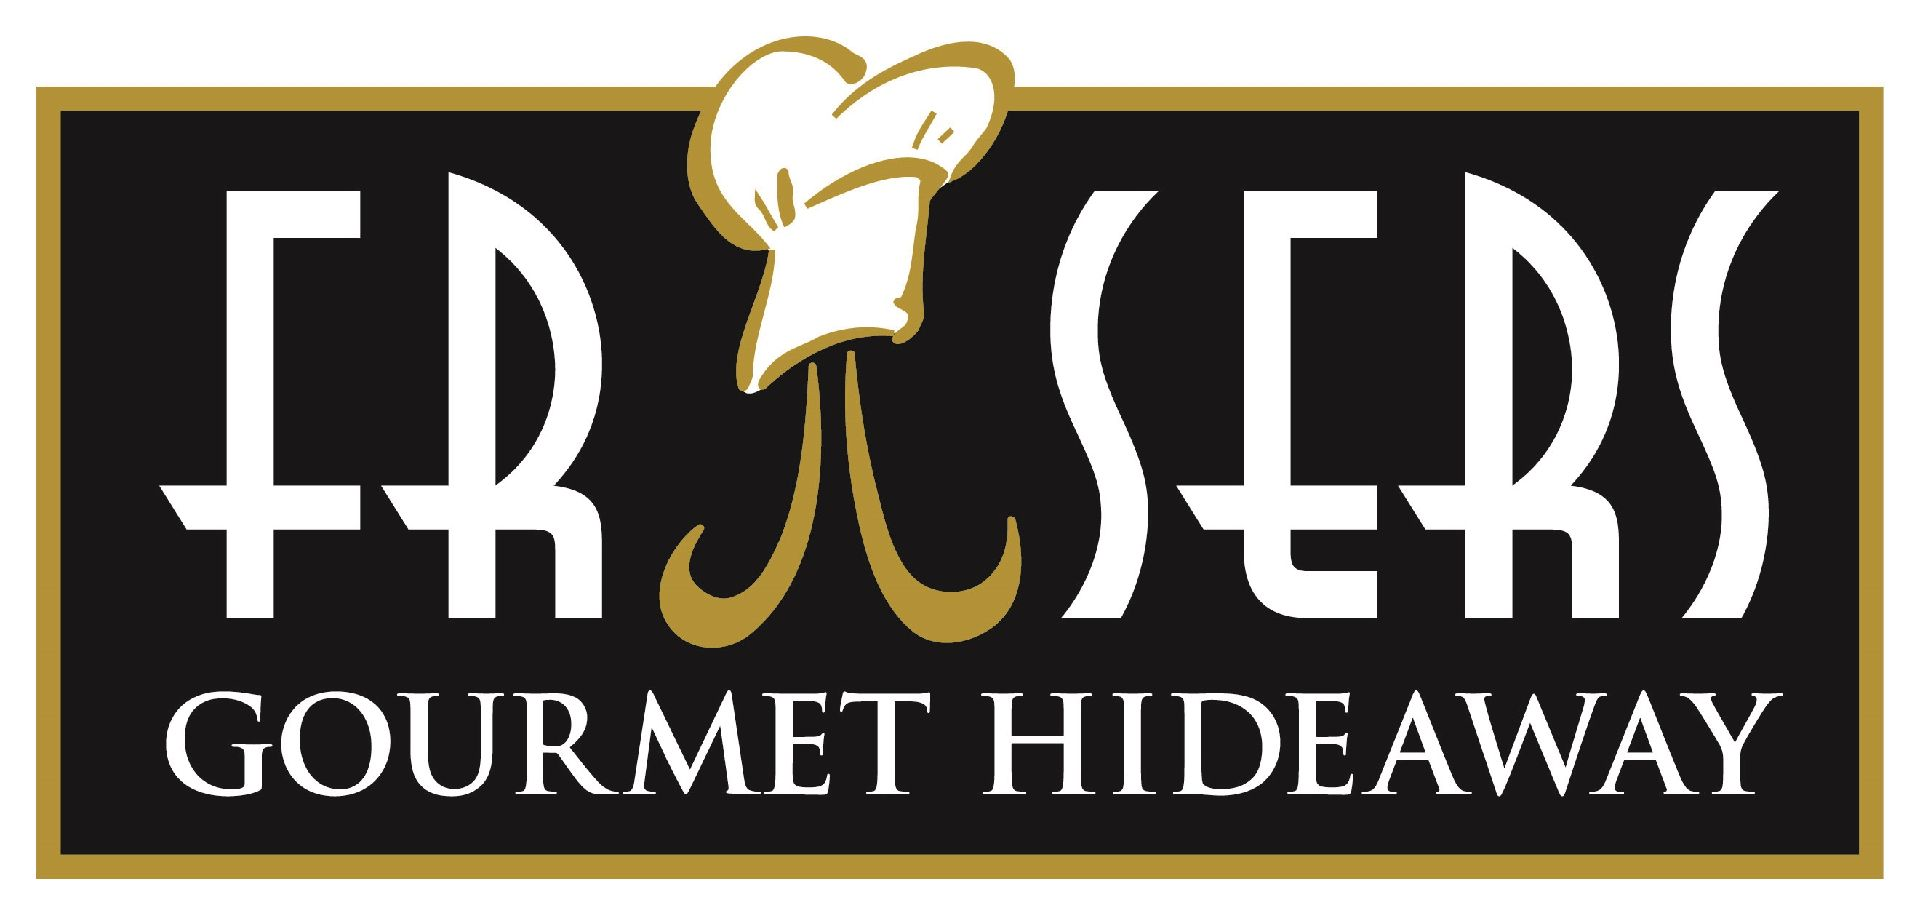 Frasers Gourmet Hideaway Logo